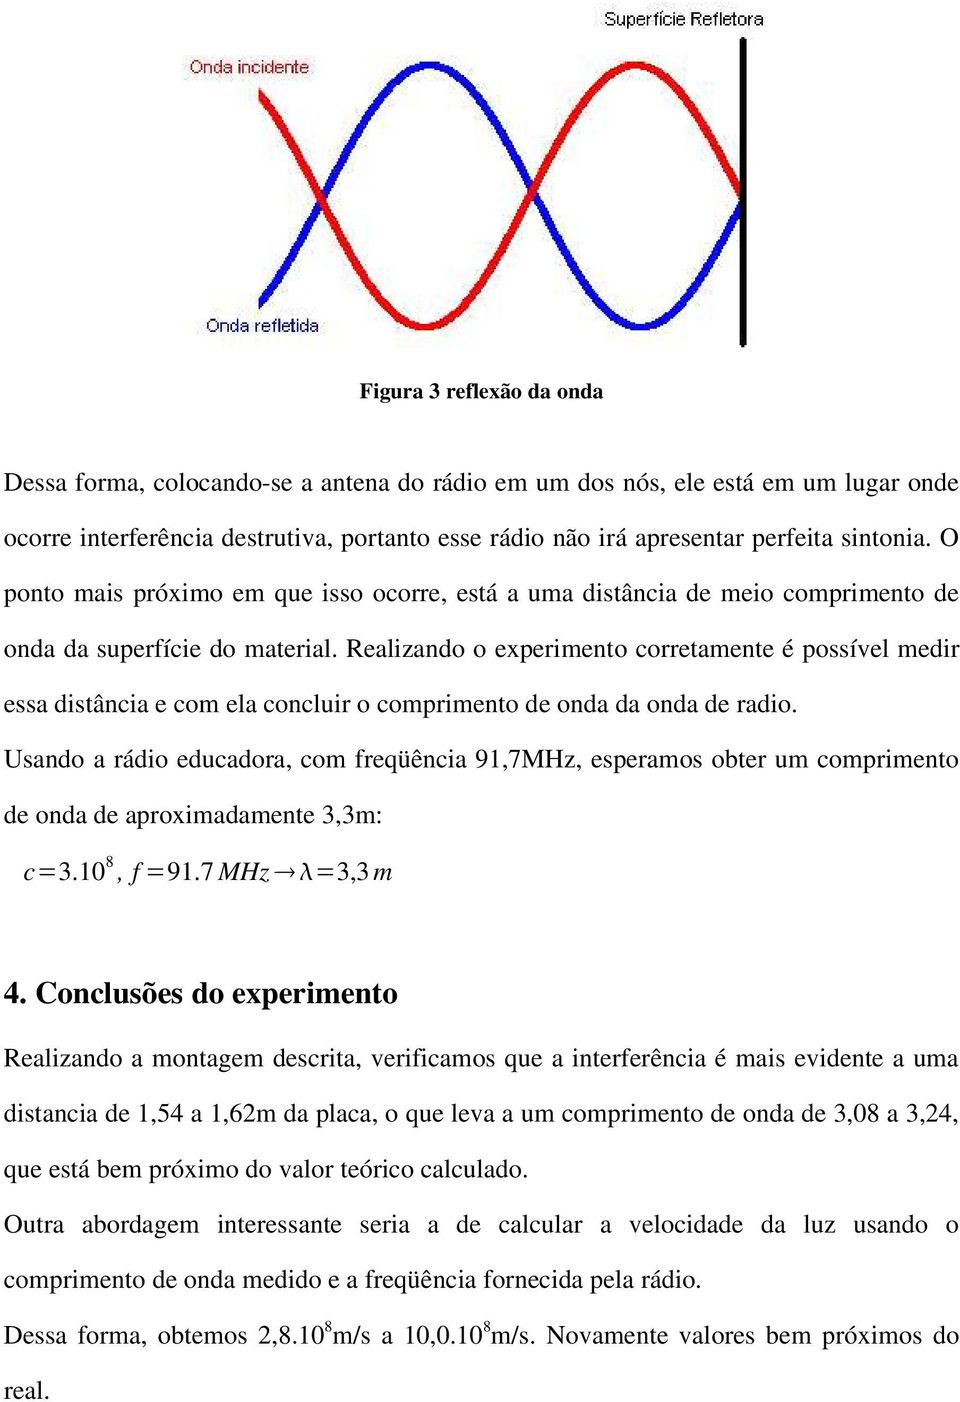 Realizando o experimento corretamente é possível medir essa distância e com ela concluir o comprimento de onda da onda de radio.